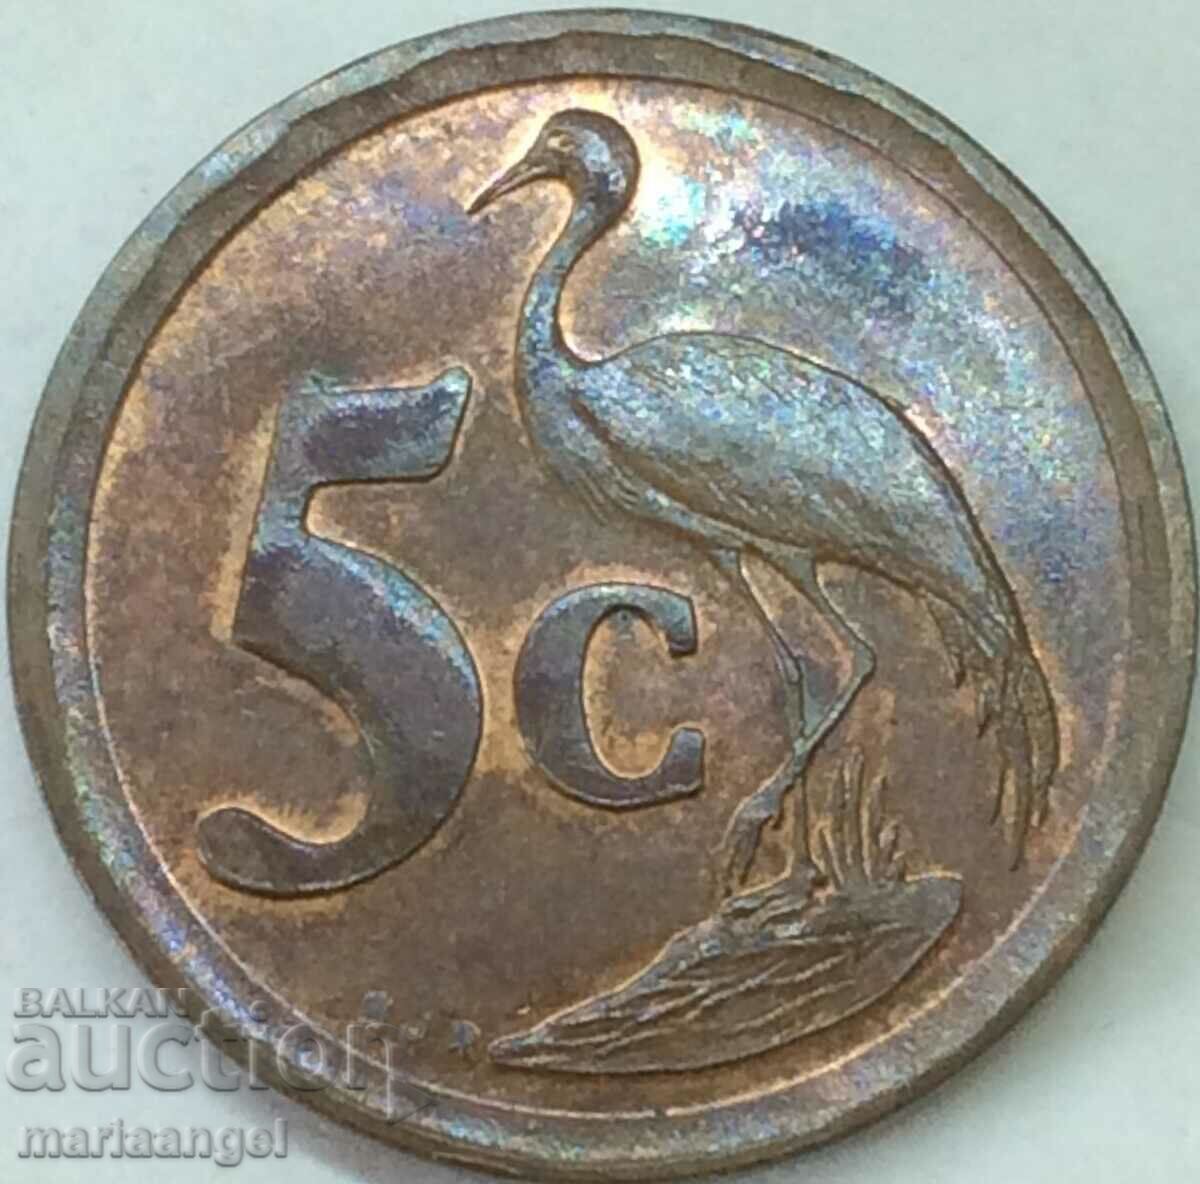 Νότια Αφρική 5 σεντς 1993